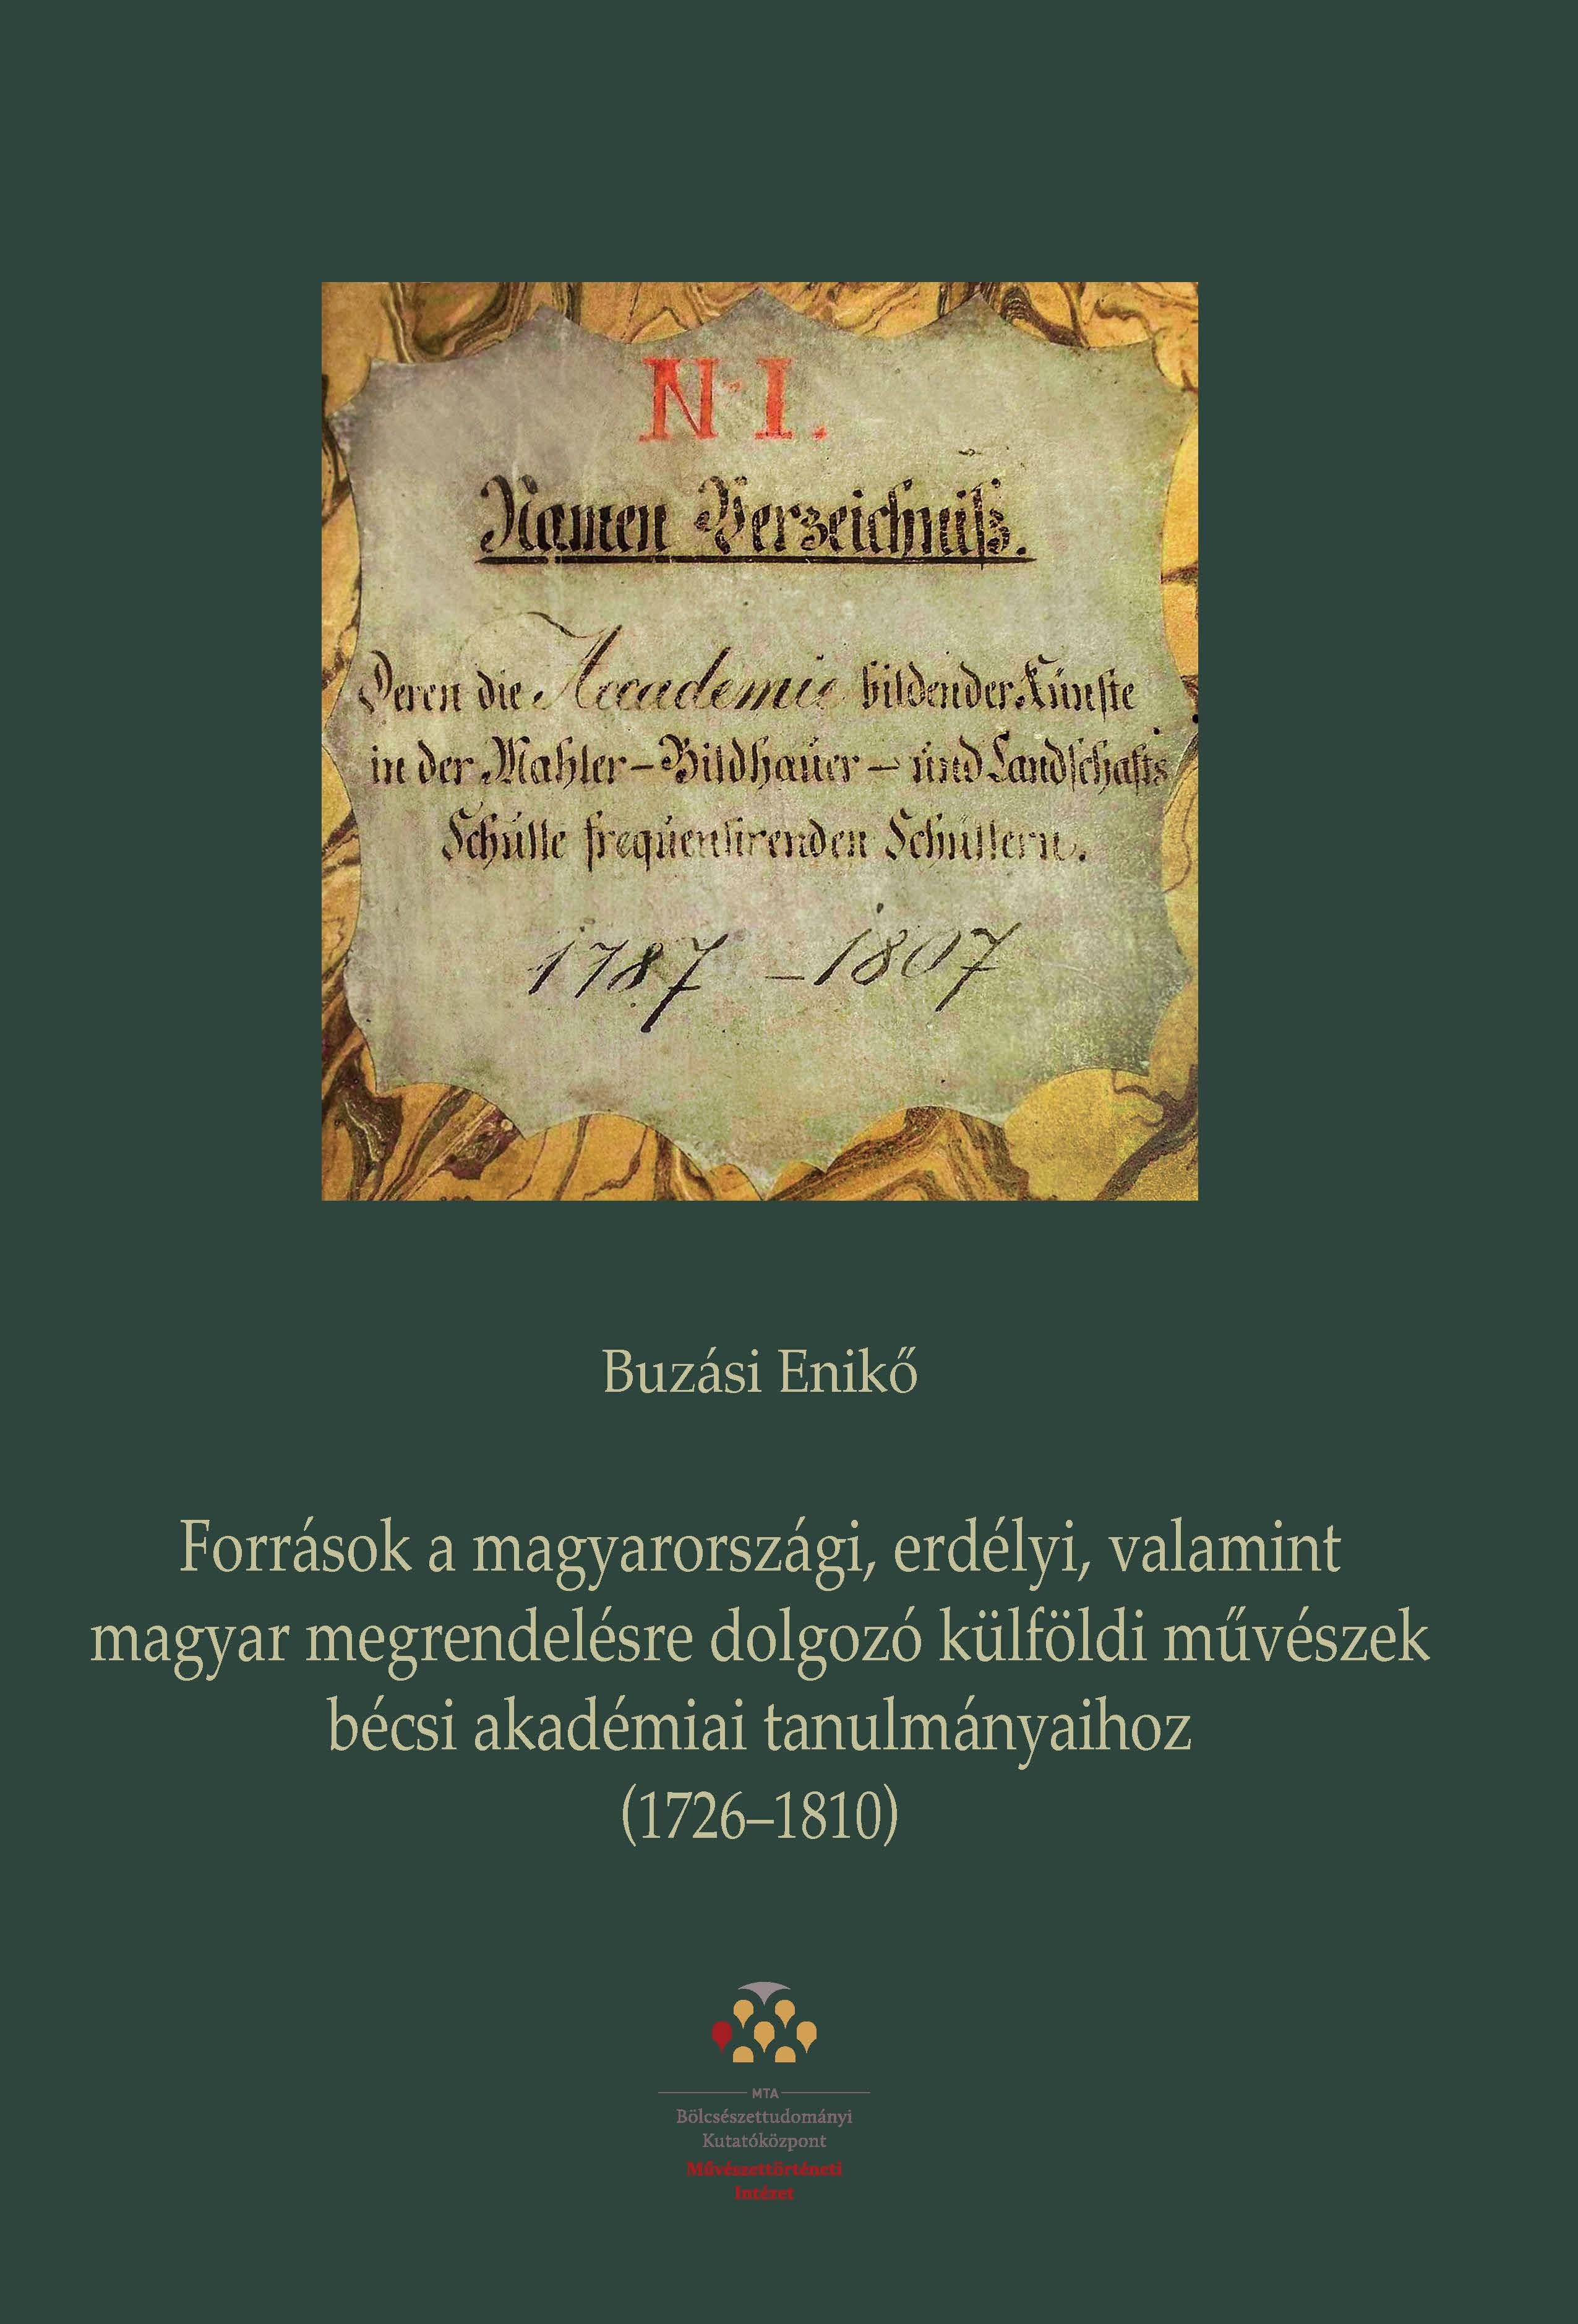 BUZÁSI ENIKŐ - Források a magyarországi, erdélyi, valamint magyar megrendelésre dolgozó külföldi művészek bécsi akadémiai tanulmányaihoz (1726-1810)